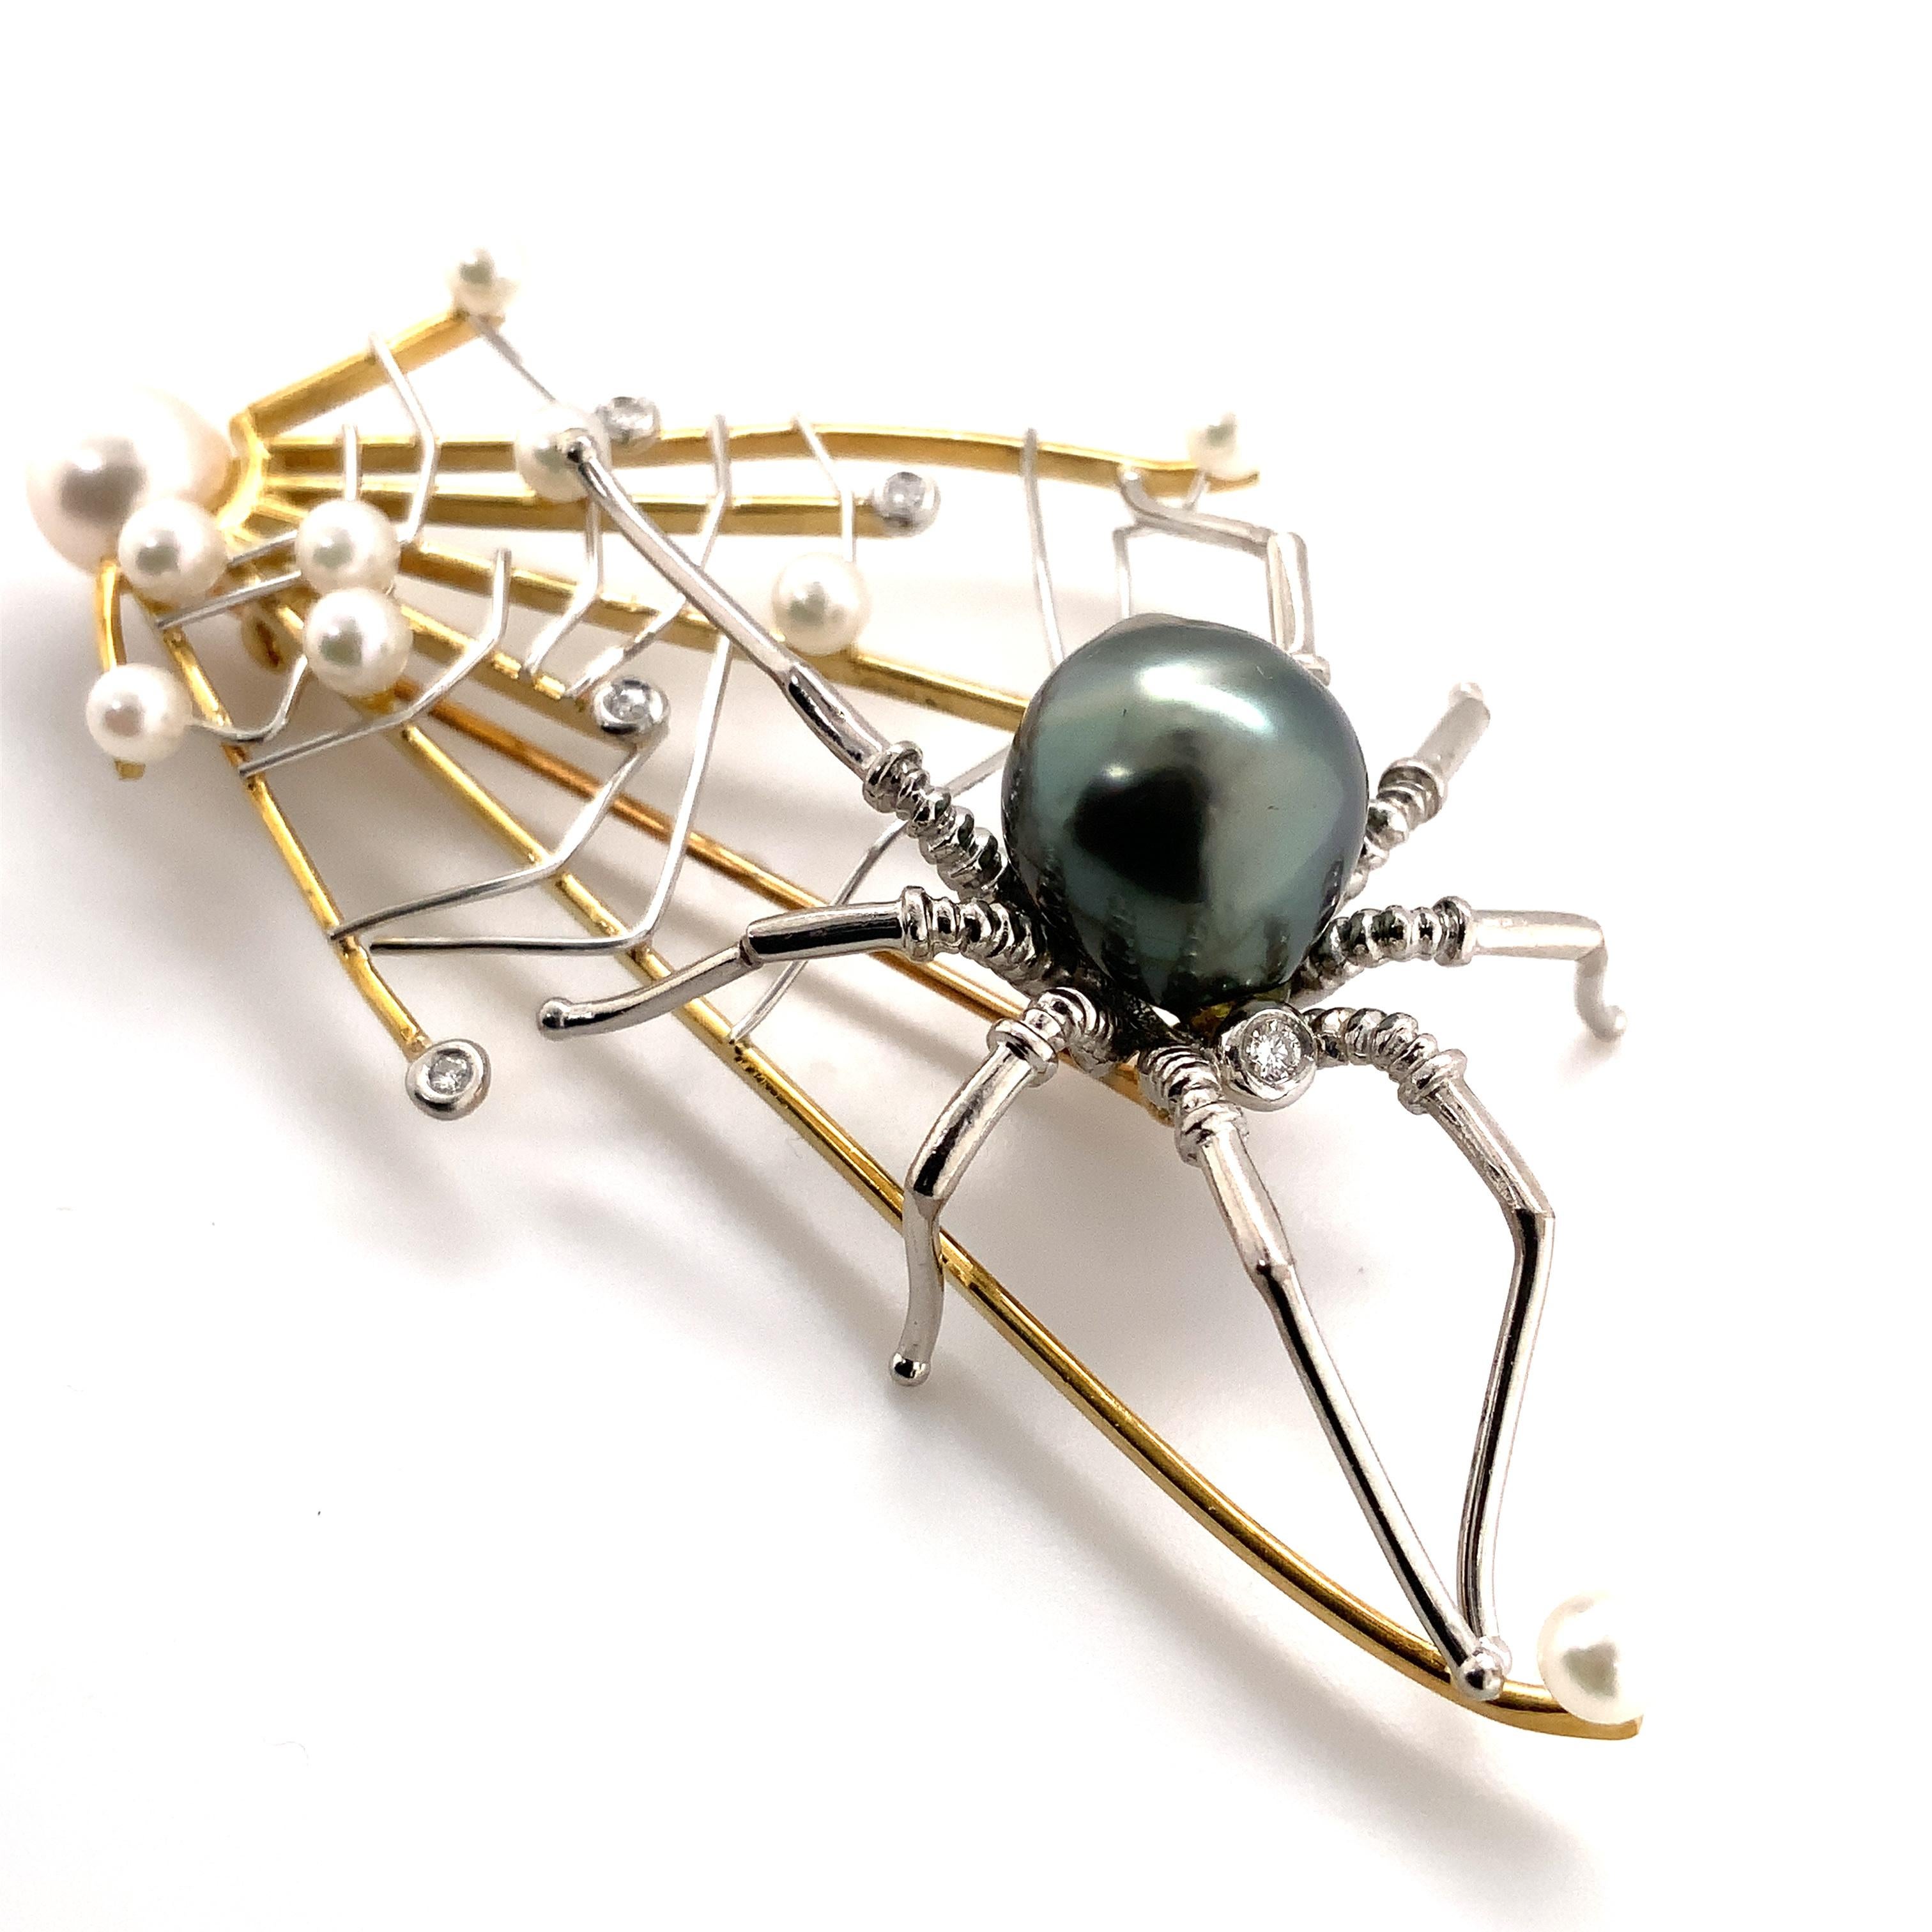 Alishan Pendentif / Broche en platine et or 18 carats, en édition limitée, représentant l'araignée et la toile, avec des perles et des diamants. Ce Design/One Whiting contient 10 perles blanches d'Akoya, une perle noire de Tahiti de 11 mm et 6